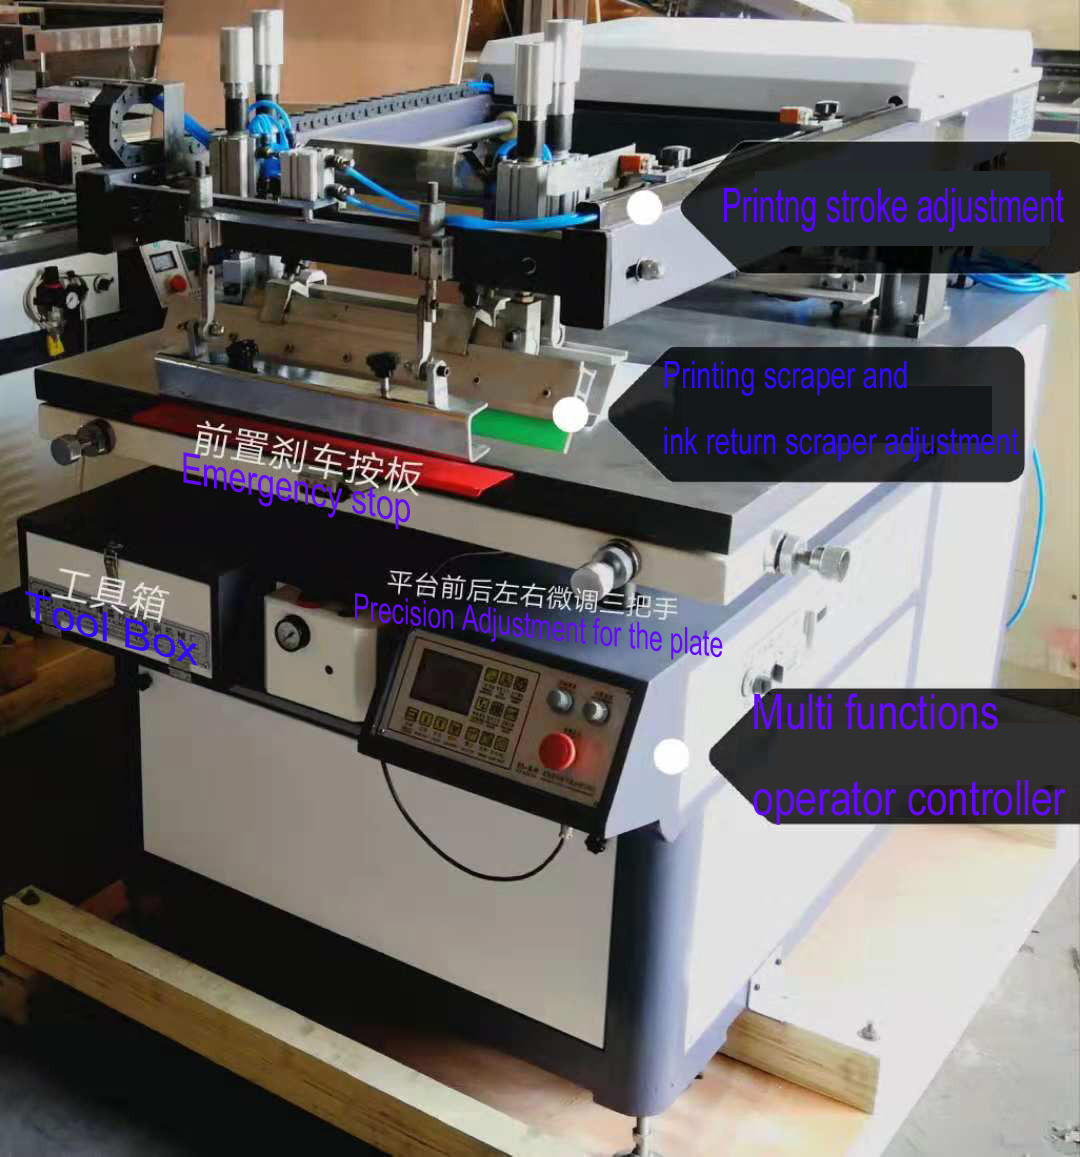 دستگاه چاپ سیلک با دستگاه برداشت خودکار و دستگاه خشک کردن UV